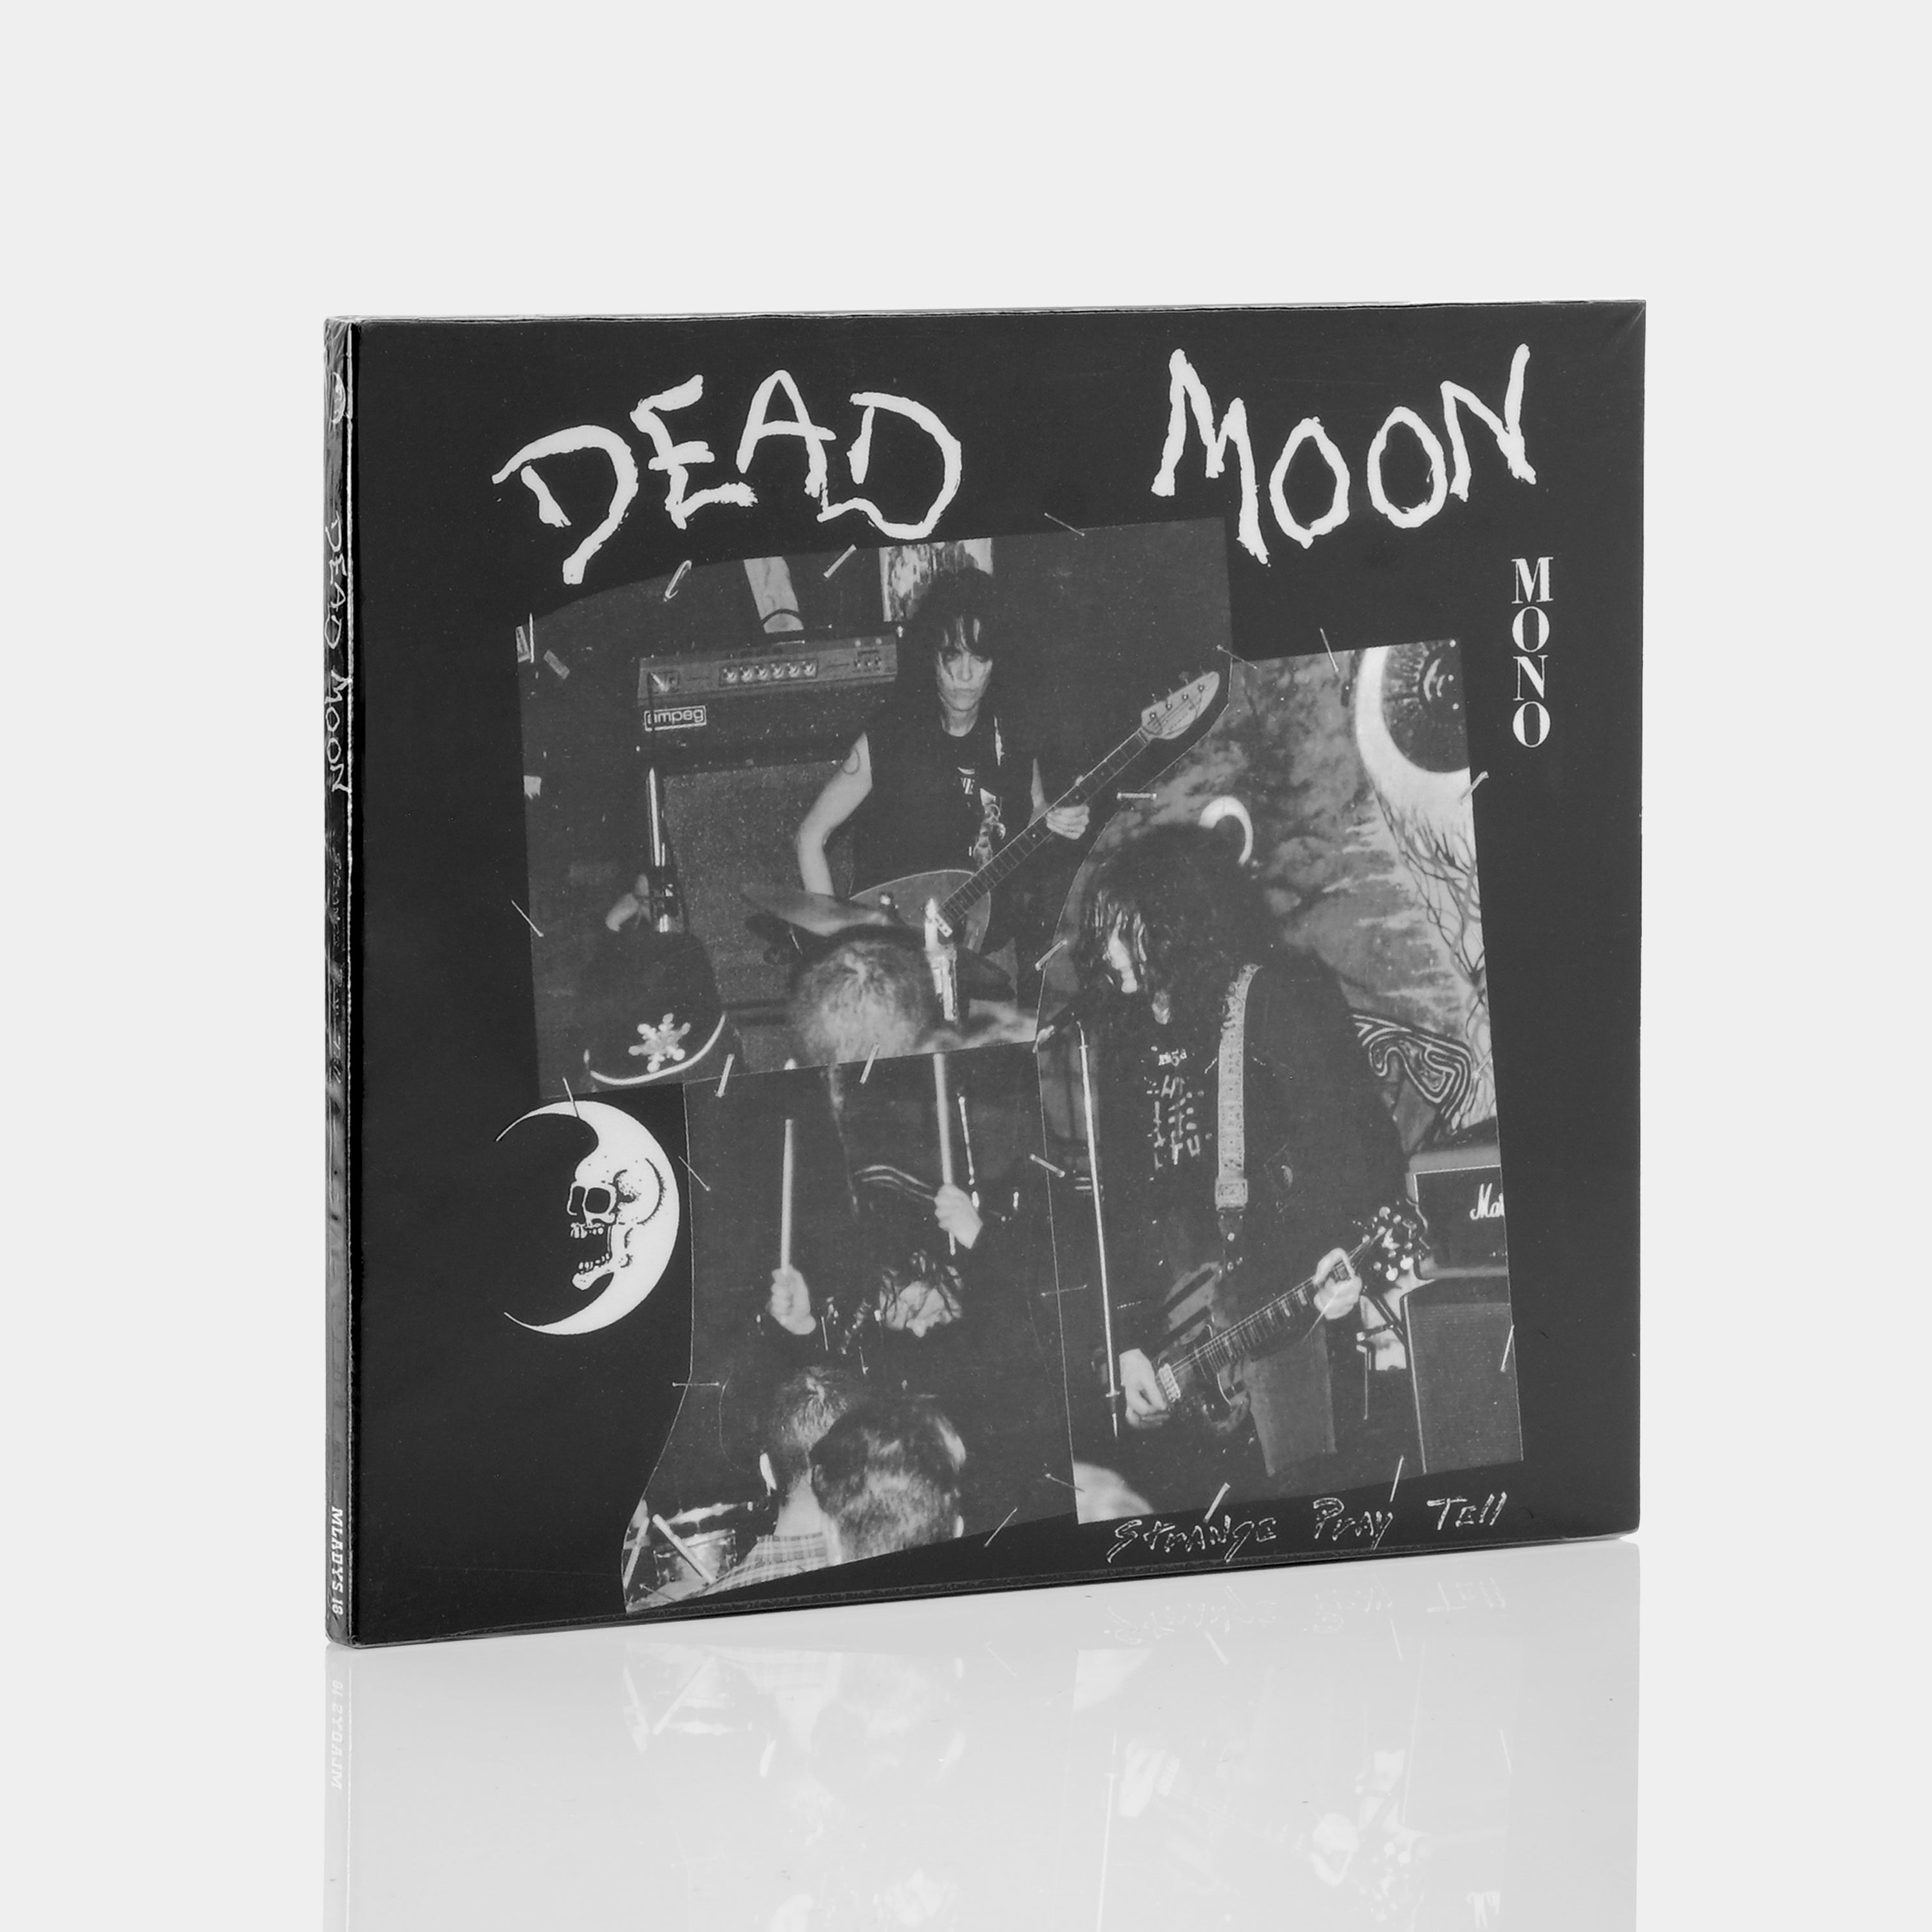 Dead Moon - Strange Pray Tell CD